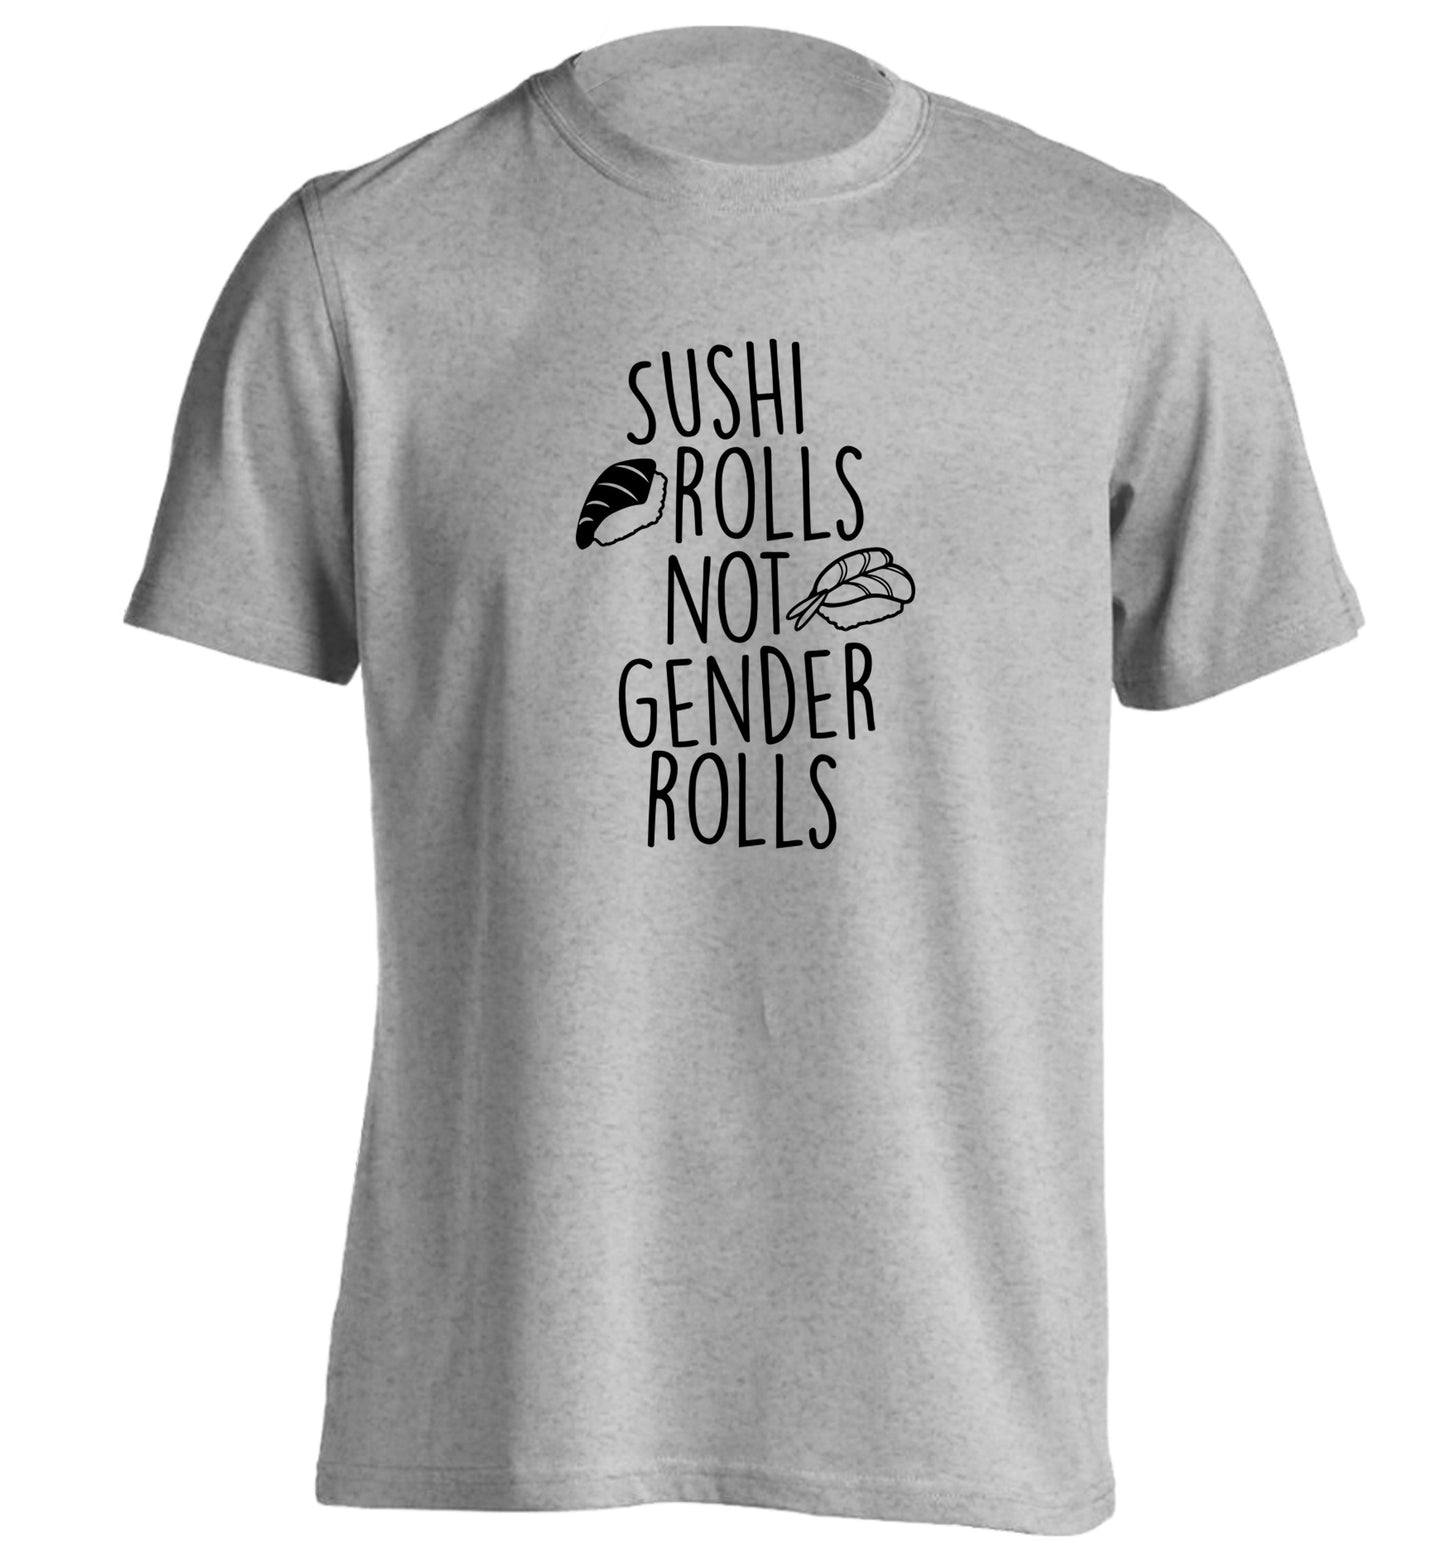 Sushi rolls not gender rolls adults unisex grey Tshirt 2XL